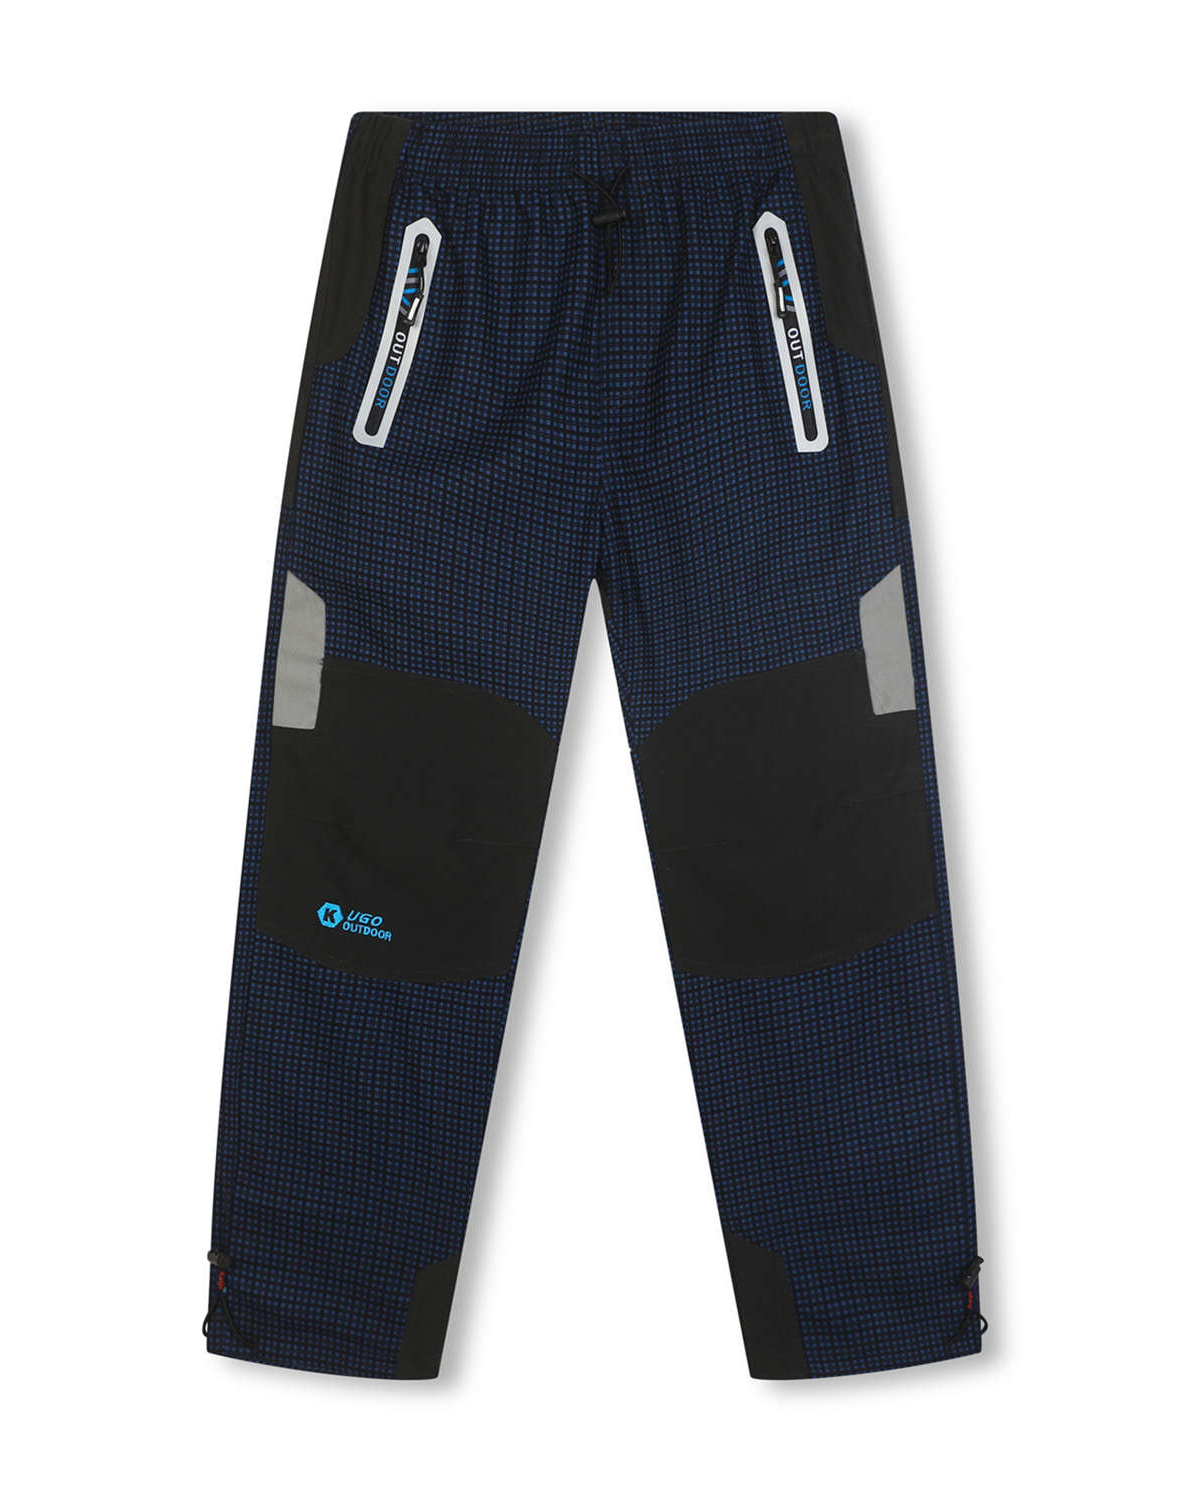 Chlapecké outdoorové kalhoty - KUGO G8556, tmavě modrá / tyrkysové kapsy Barva: Modrá tmavě, Velikost: 170